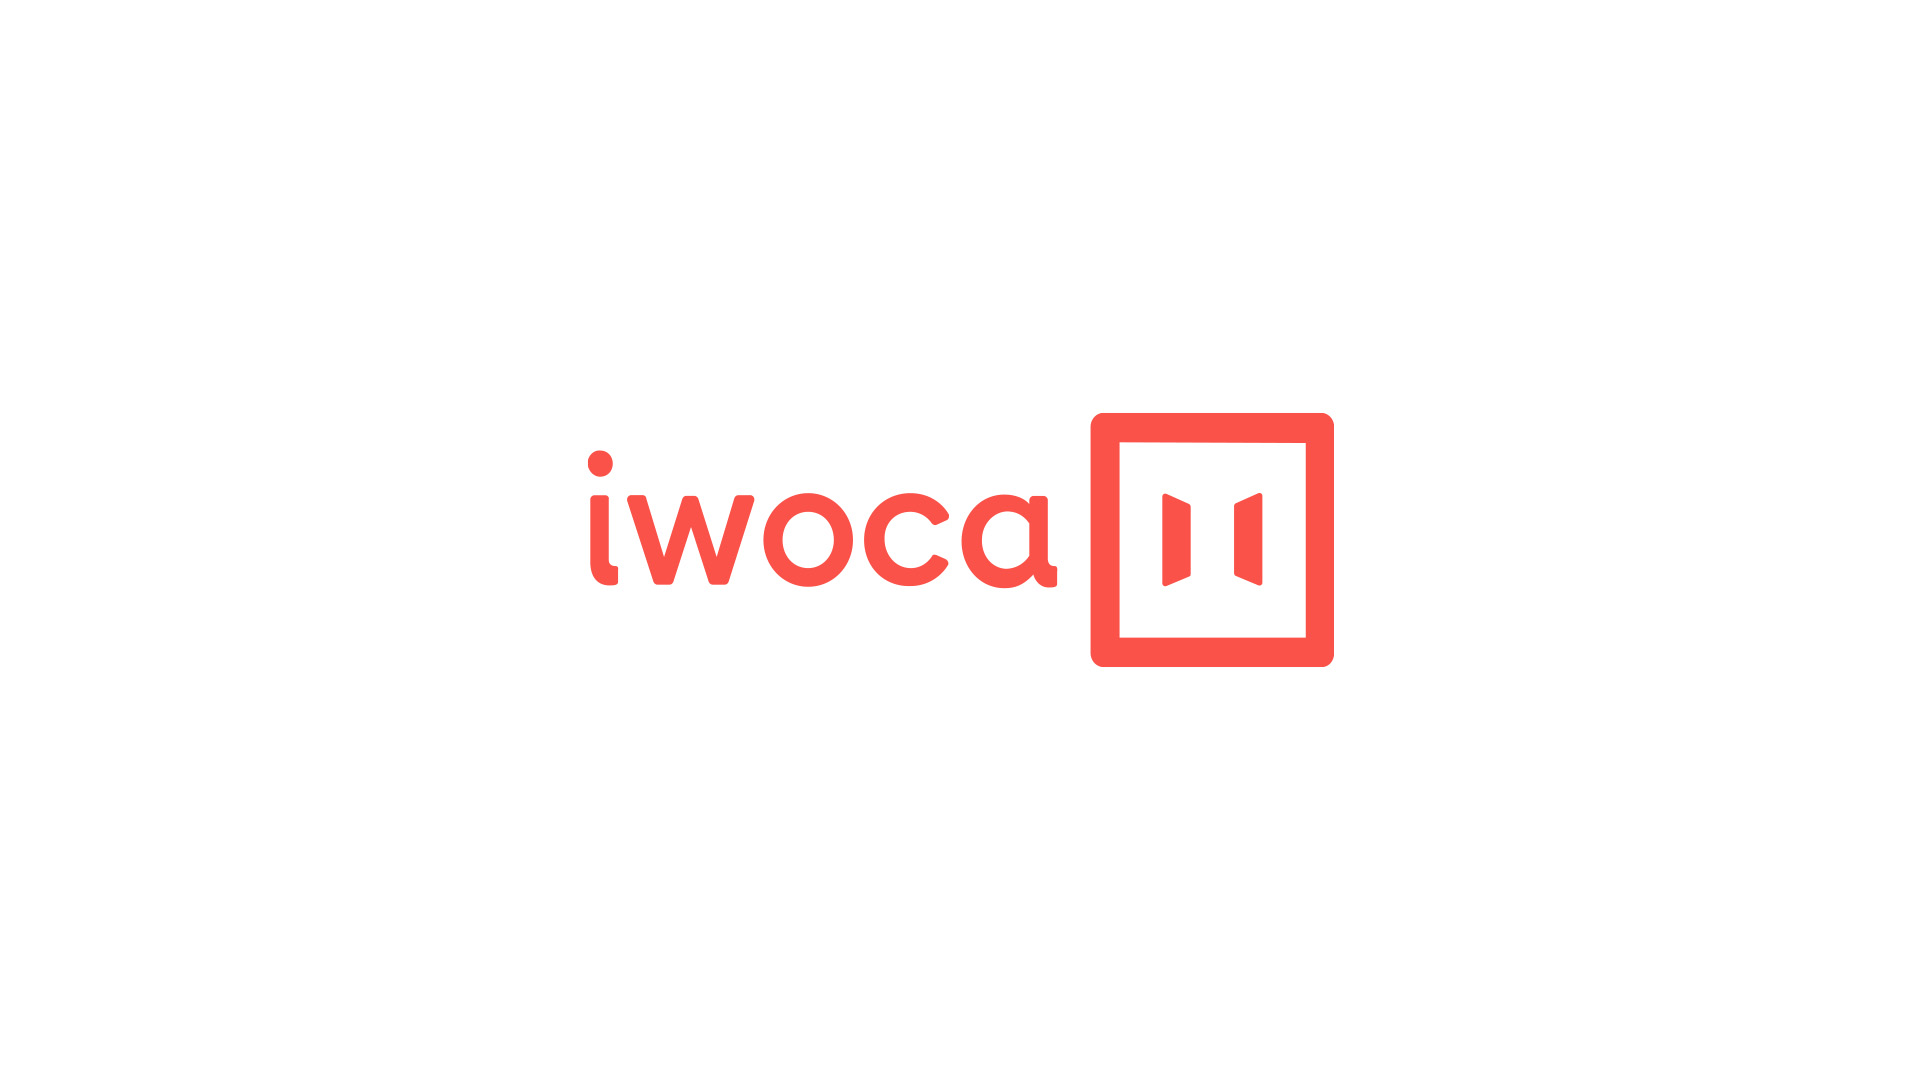 iwoca – rebrand